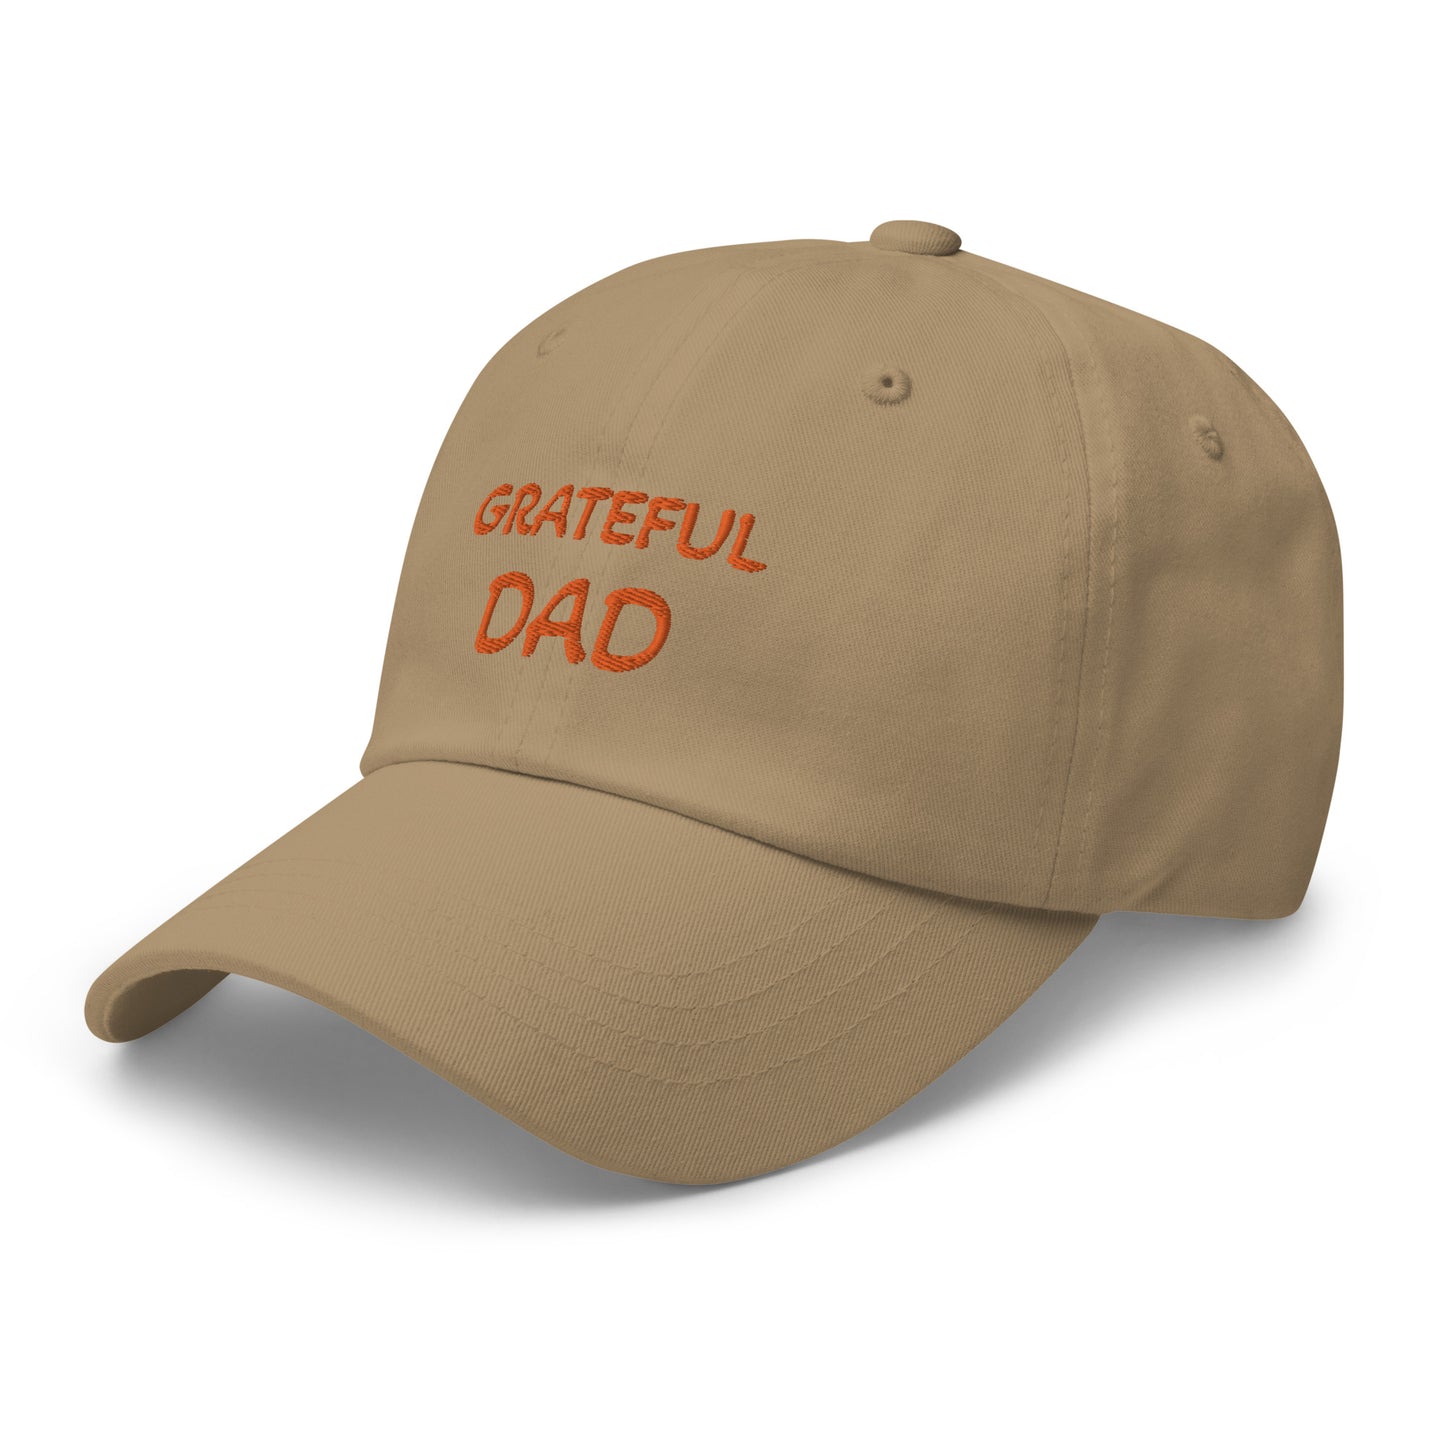 GRATEFUL DAD Dad hat